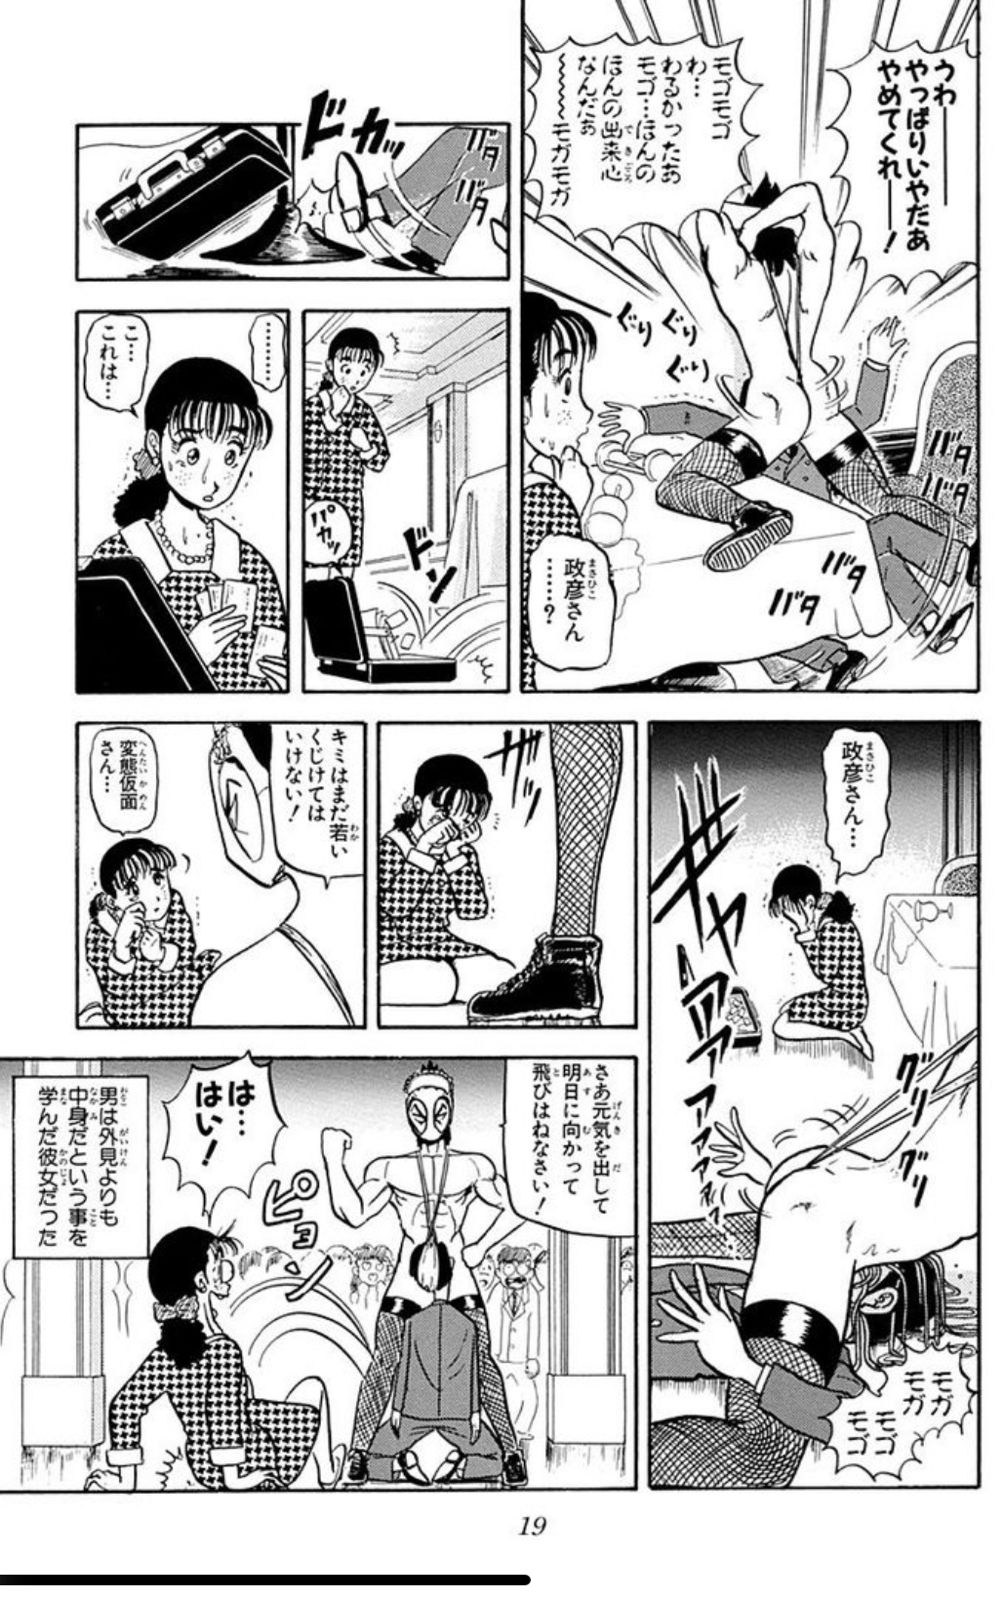 【Image】General manga with terrible erotic scenes Part 33 24